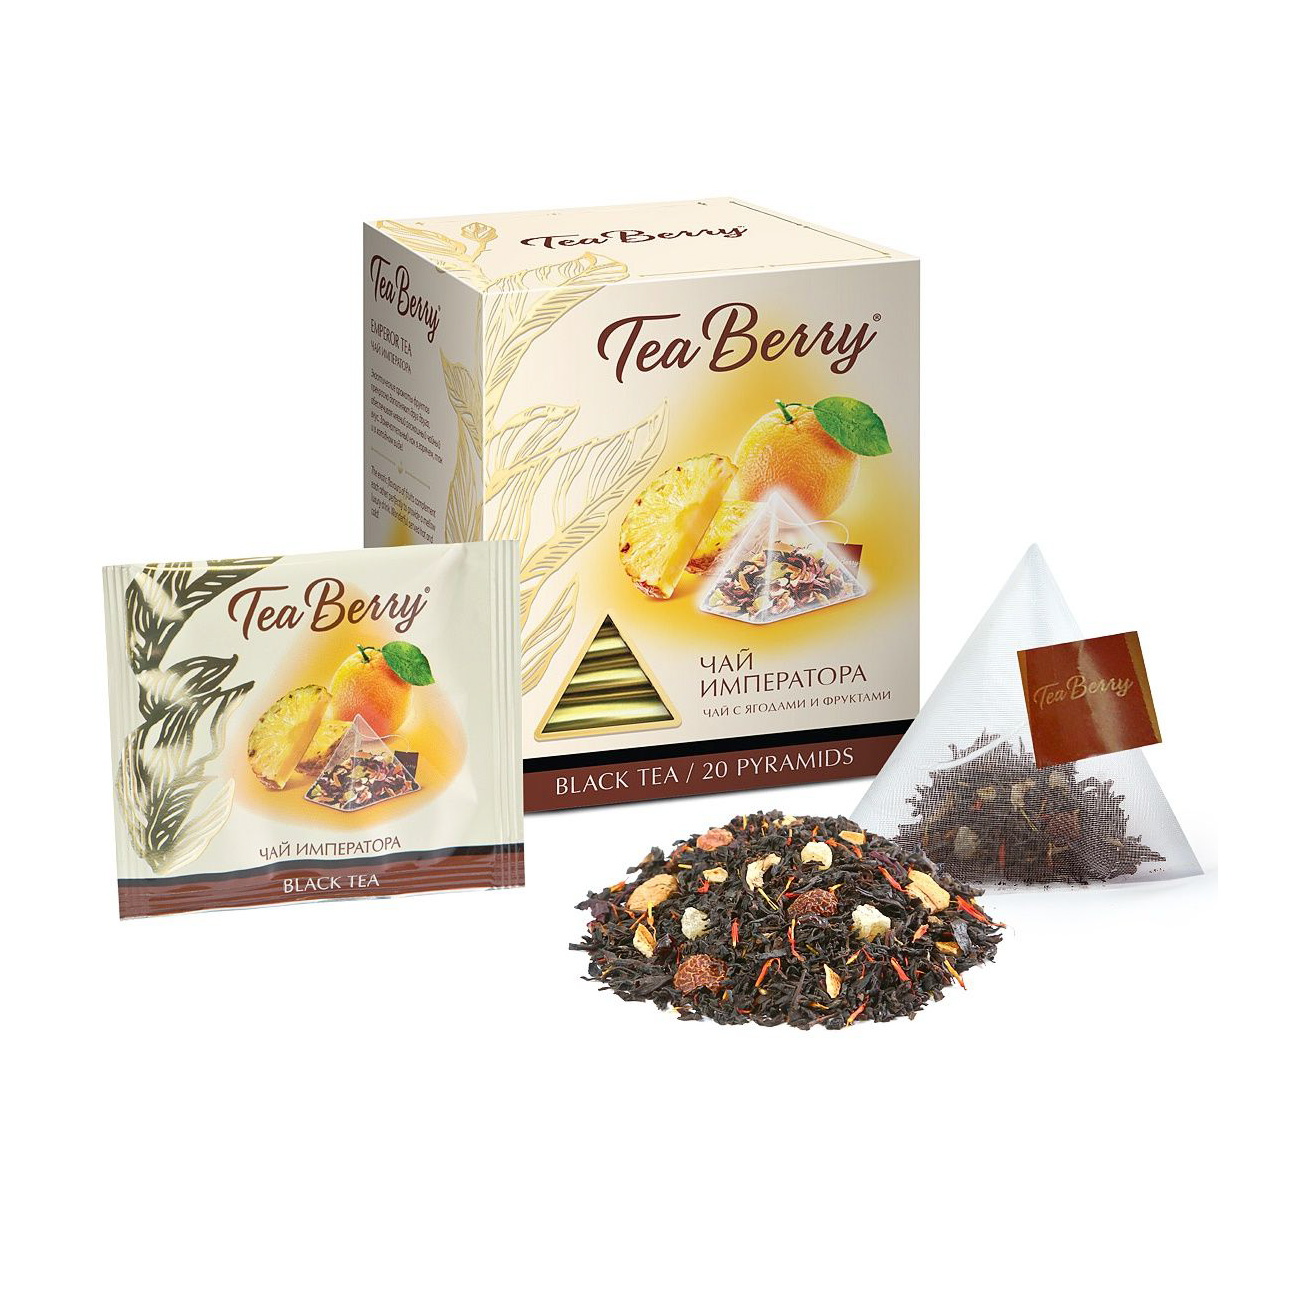 Чай черный TeaBerry Чай Императора 20 пакетиков коллагеновый чай 20 пакетиков dogus 2 коробки